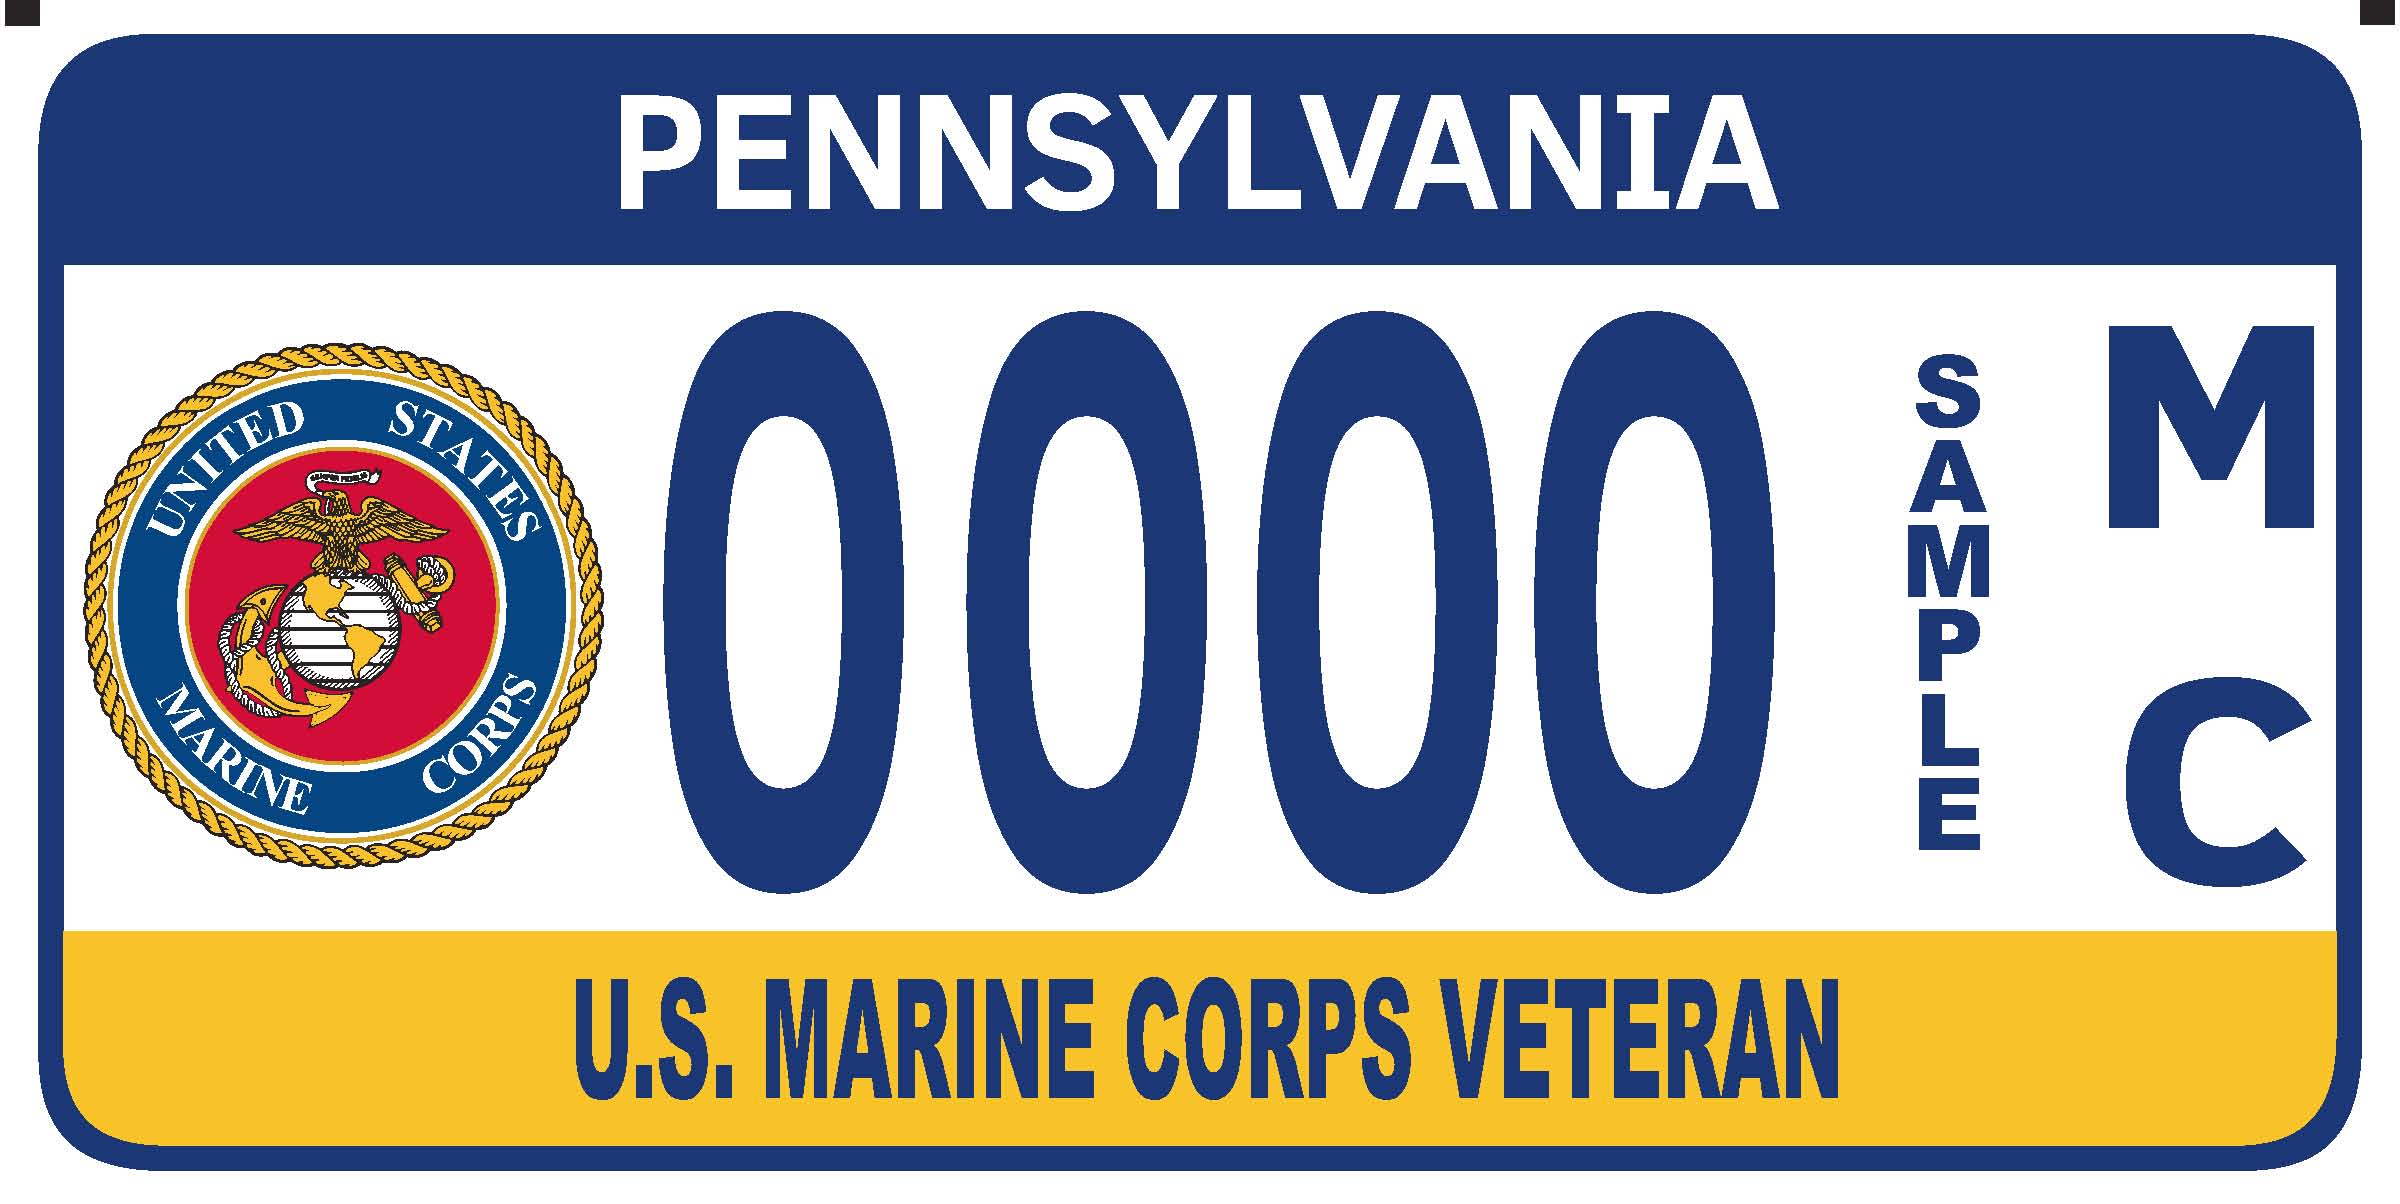 U.S. Marine Corps Veteran plate